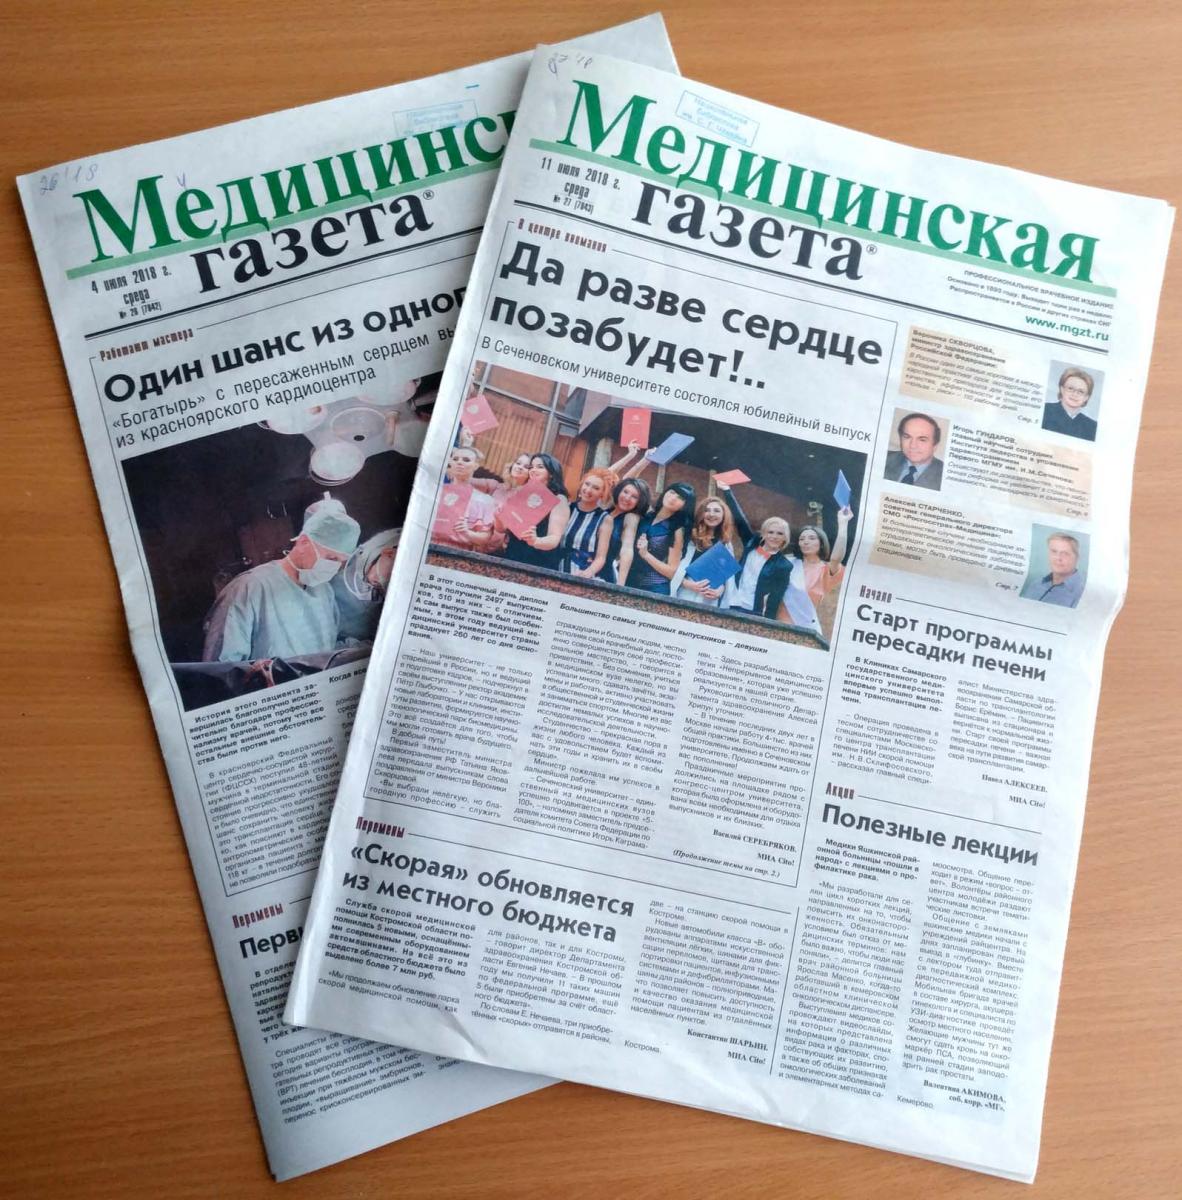 Gazeta газета. Газета. Газедата. Газета картинка. На фотографии в газете.